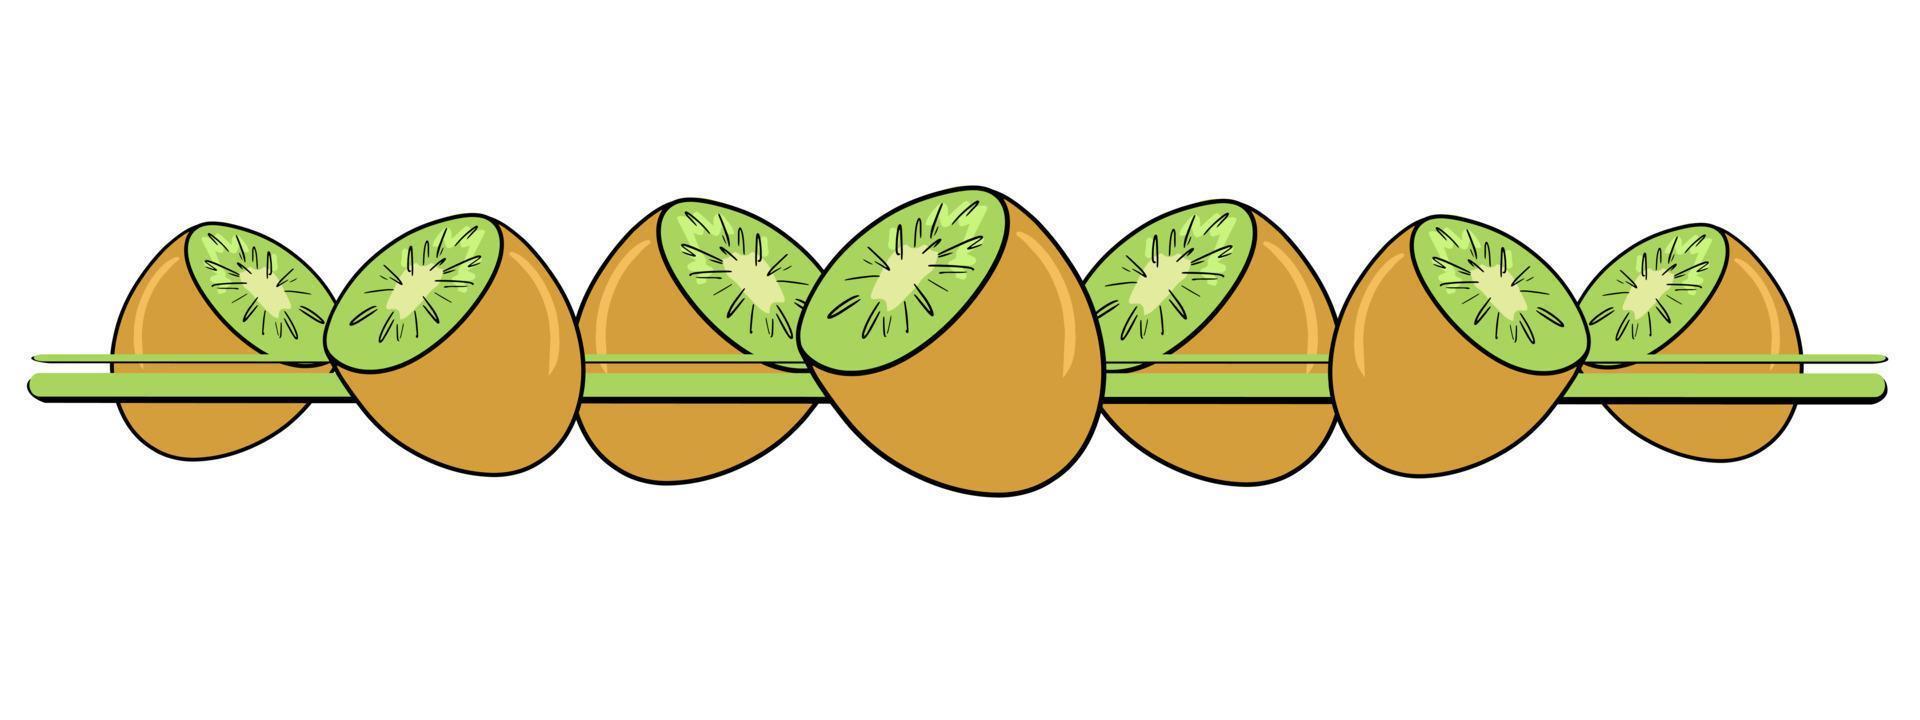 horizontaler Rand, Rand, helle saftige Hälften tropischer Kiwis, Vektorillustration im Cartoon-Stil auf weißem Hintergrund vektor